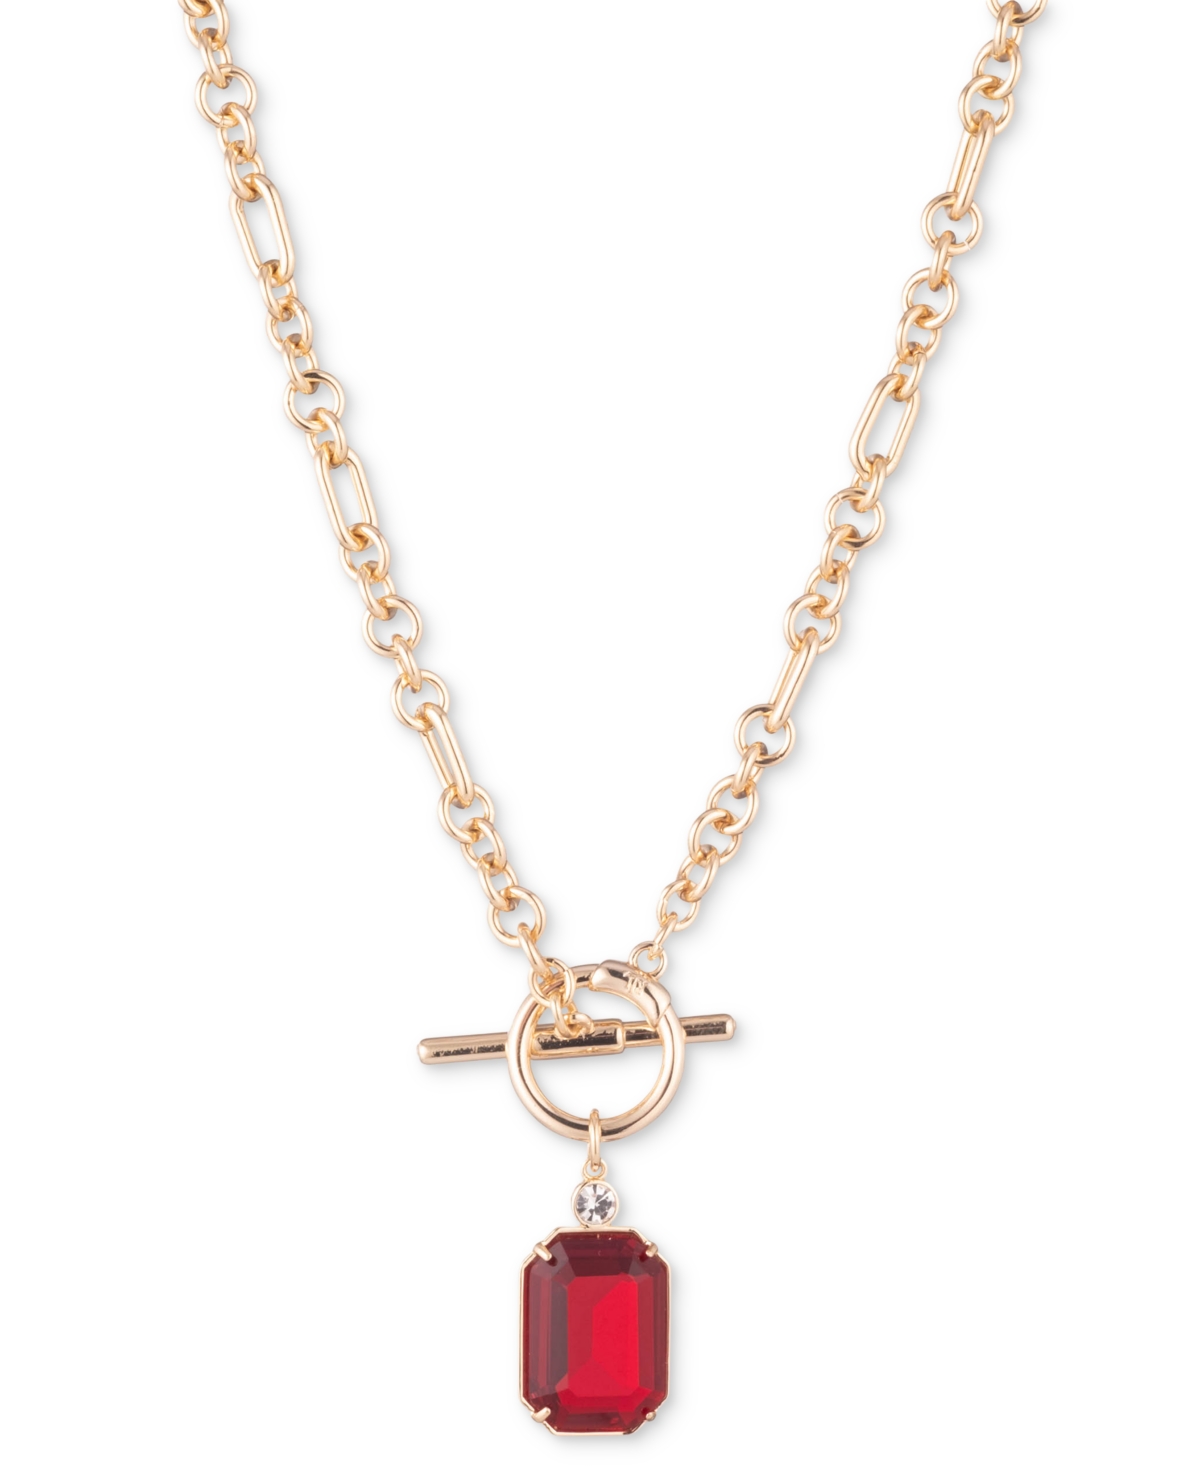 Lauren Ralph Lauren Gold-tone Crystal & Stone 17" Pendant Necklace In Red Cherry